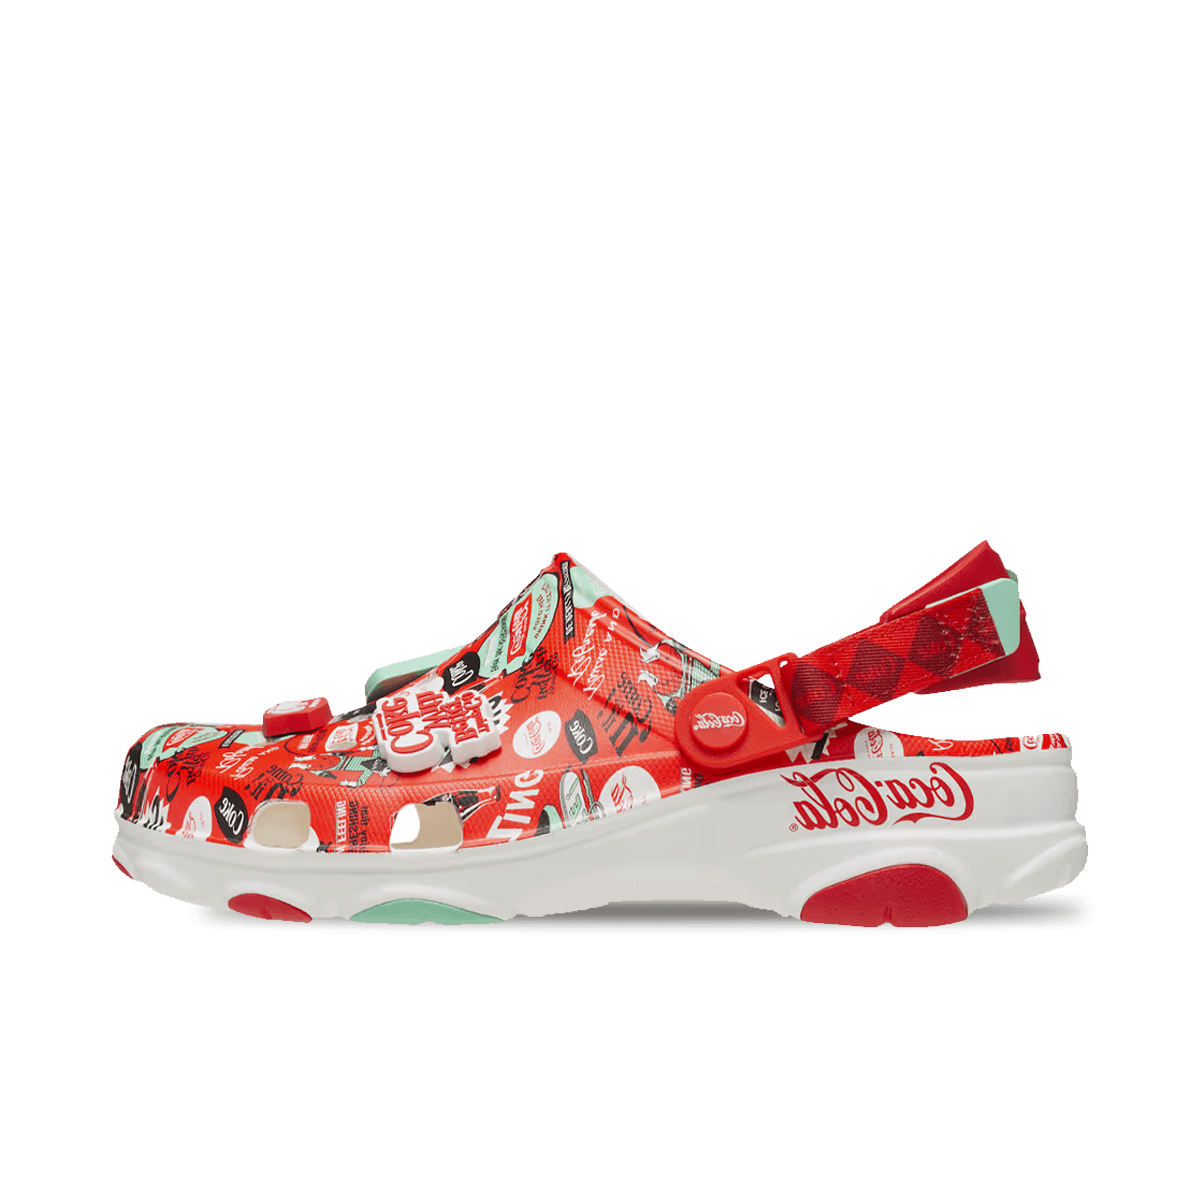 Coca-Cola x Crocs 'Red' 209312-100